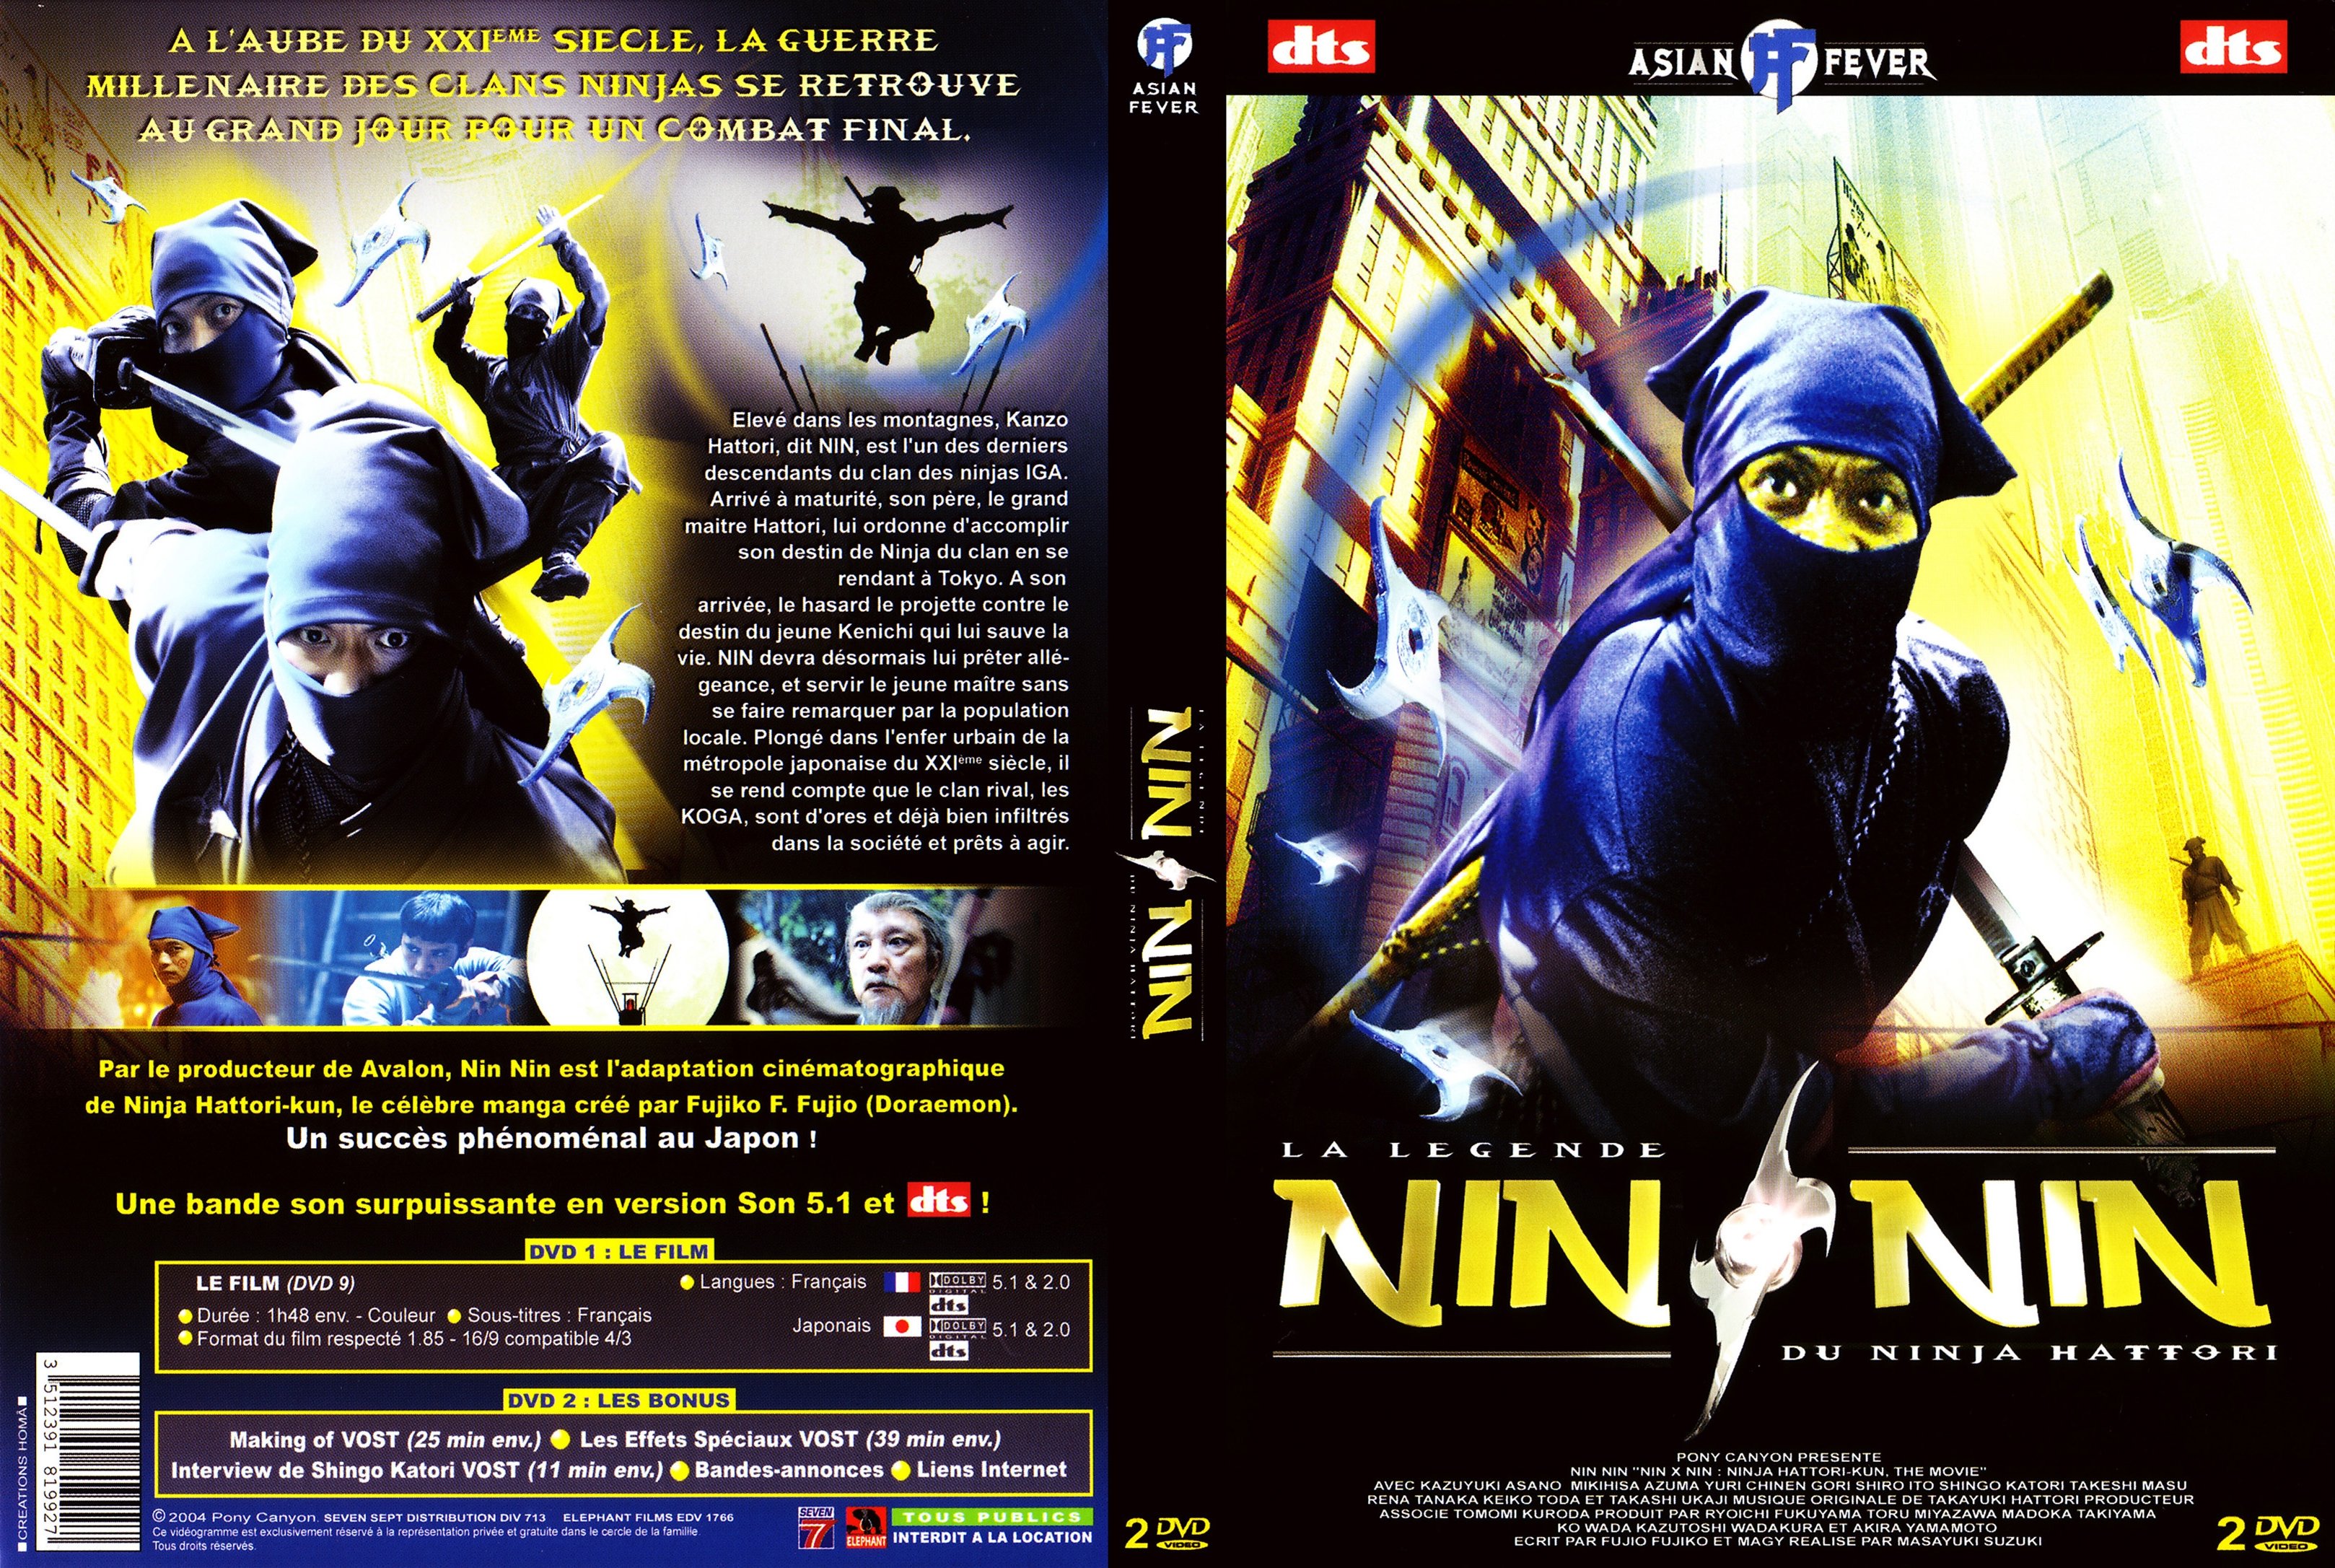 Jaquette DVD La lgende du ninja Hattori